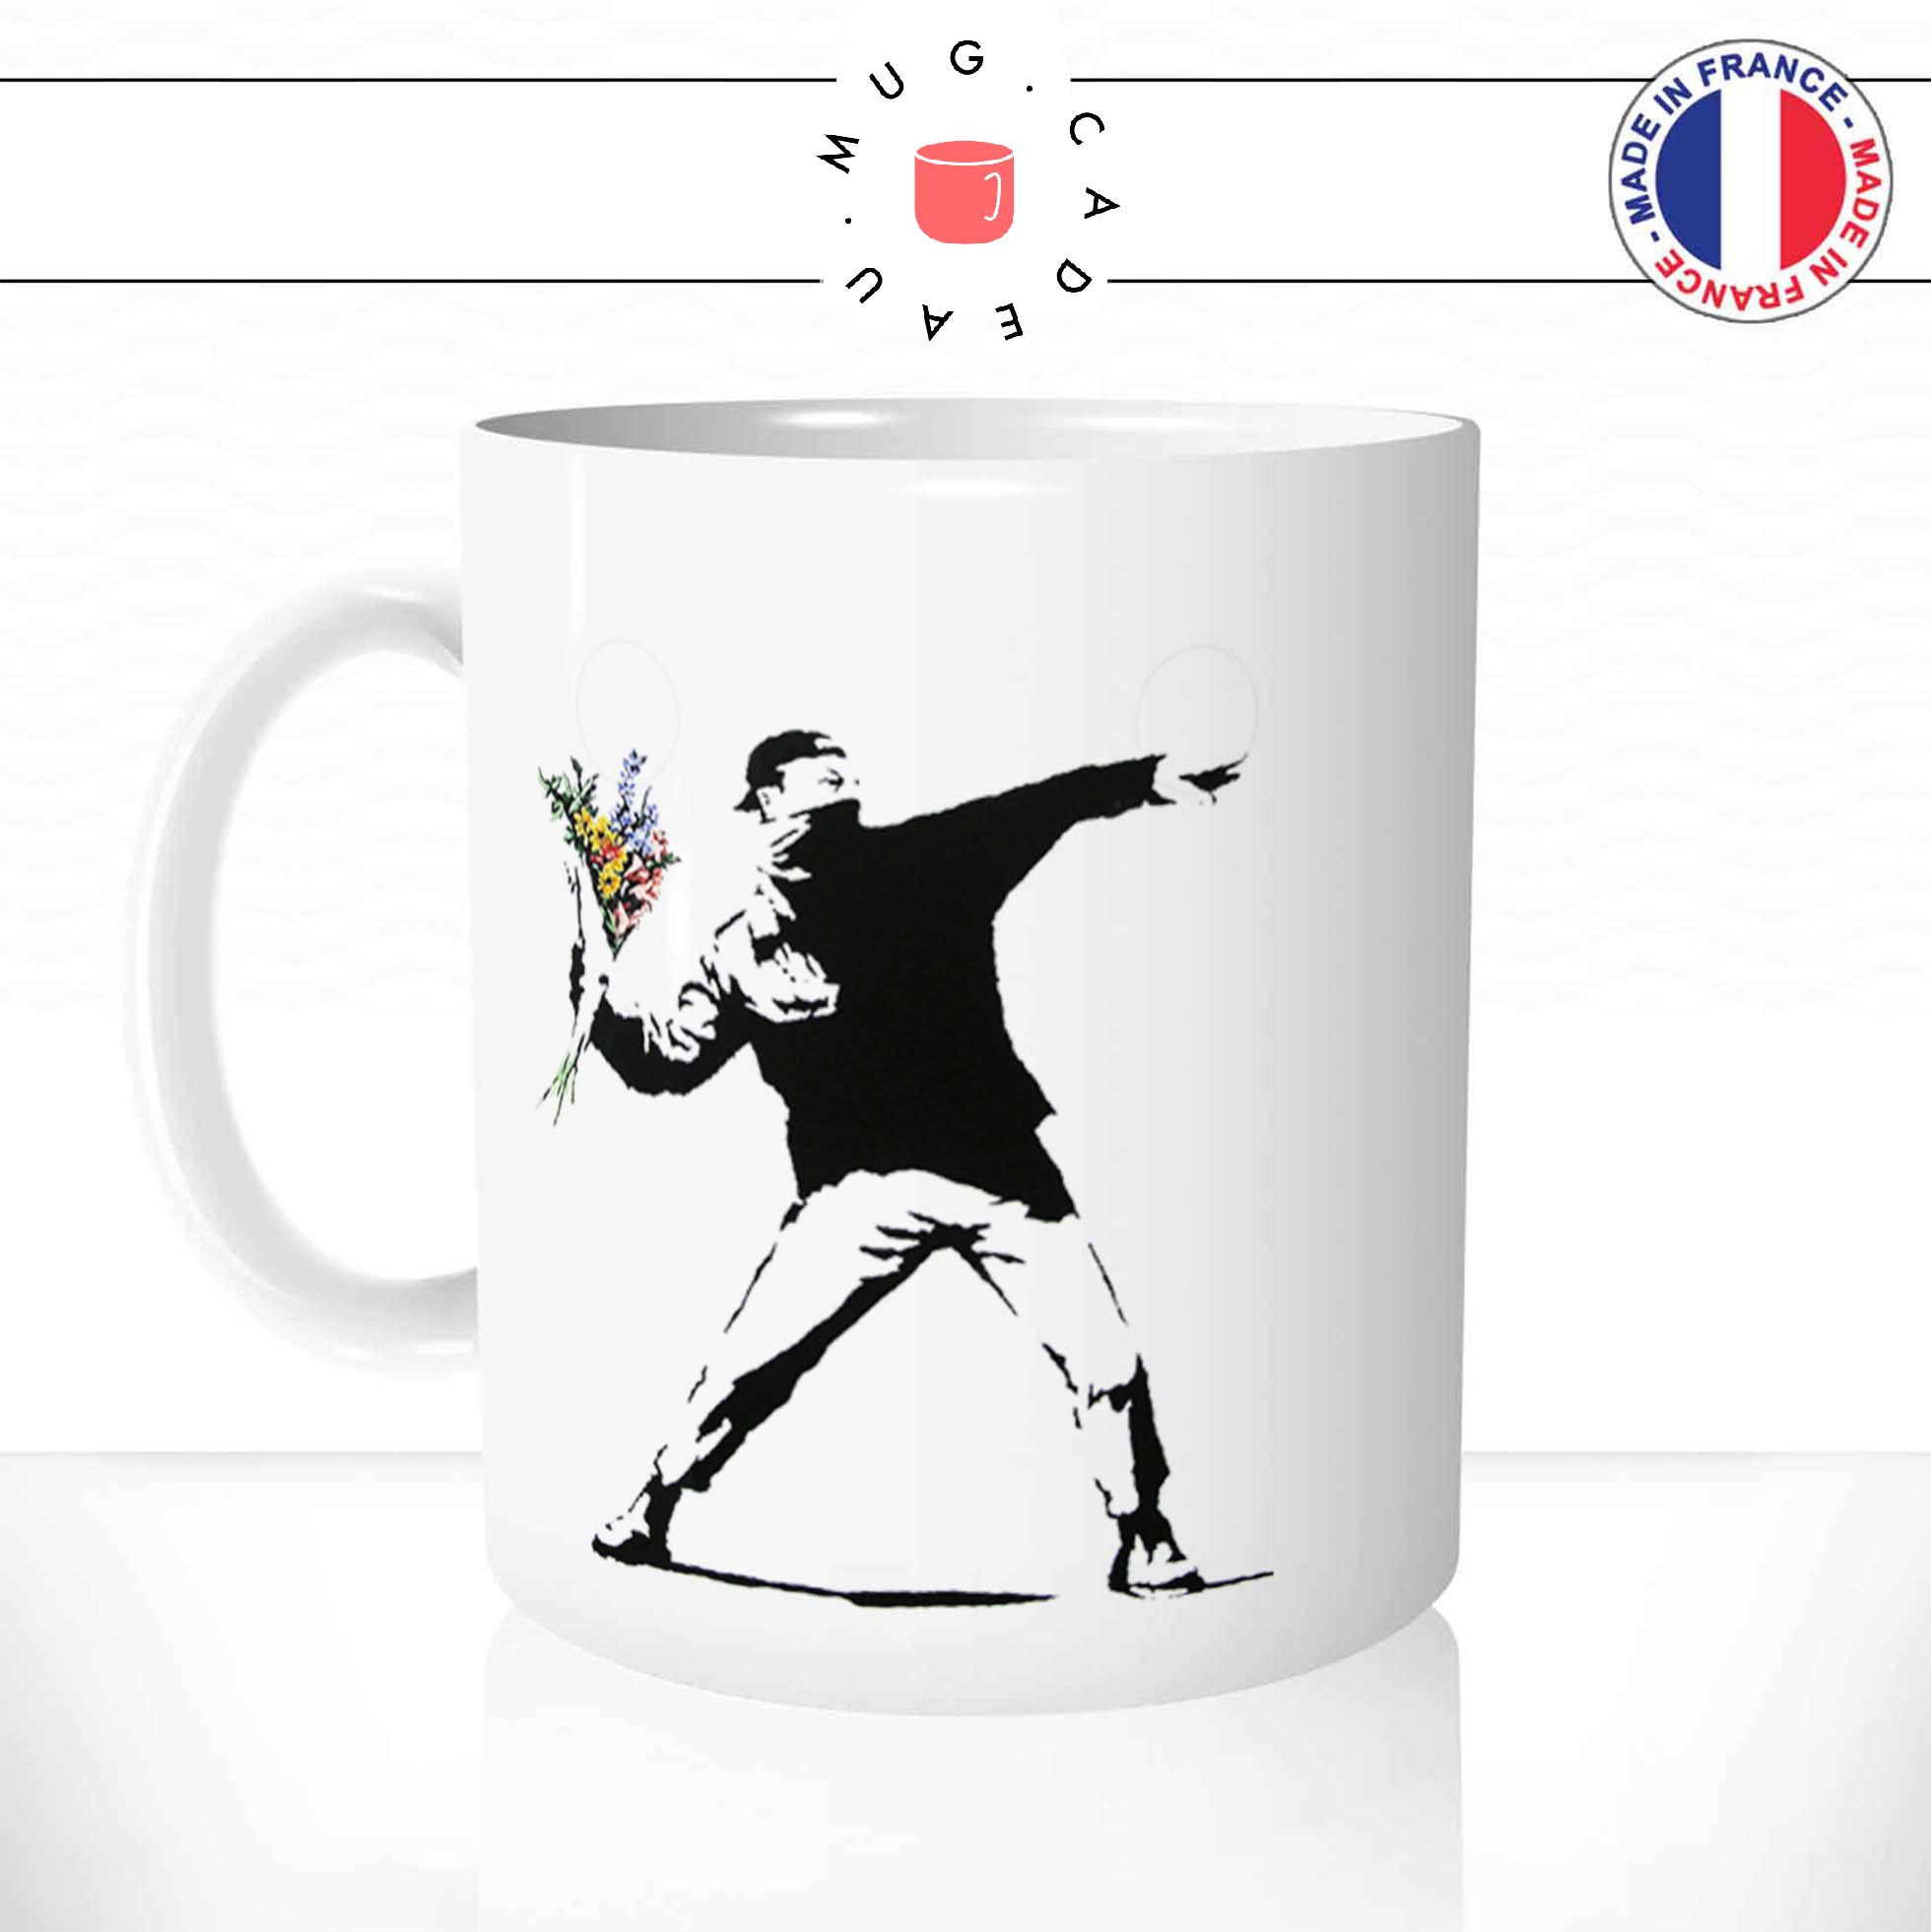 mug-tasse-ref6-artiste-art-bansky-homme-jette-fleurs-graff-cafe-the-mugs-tasses-personnalise-original-anse-gauche